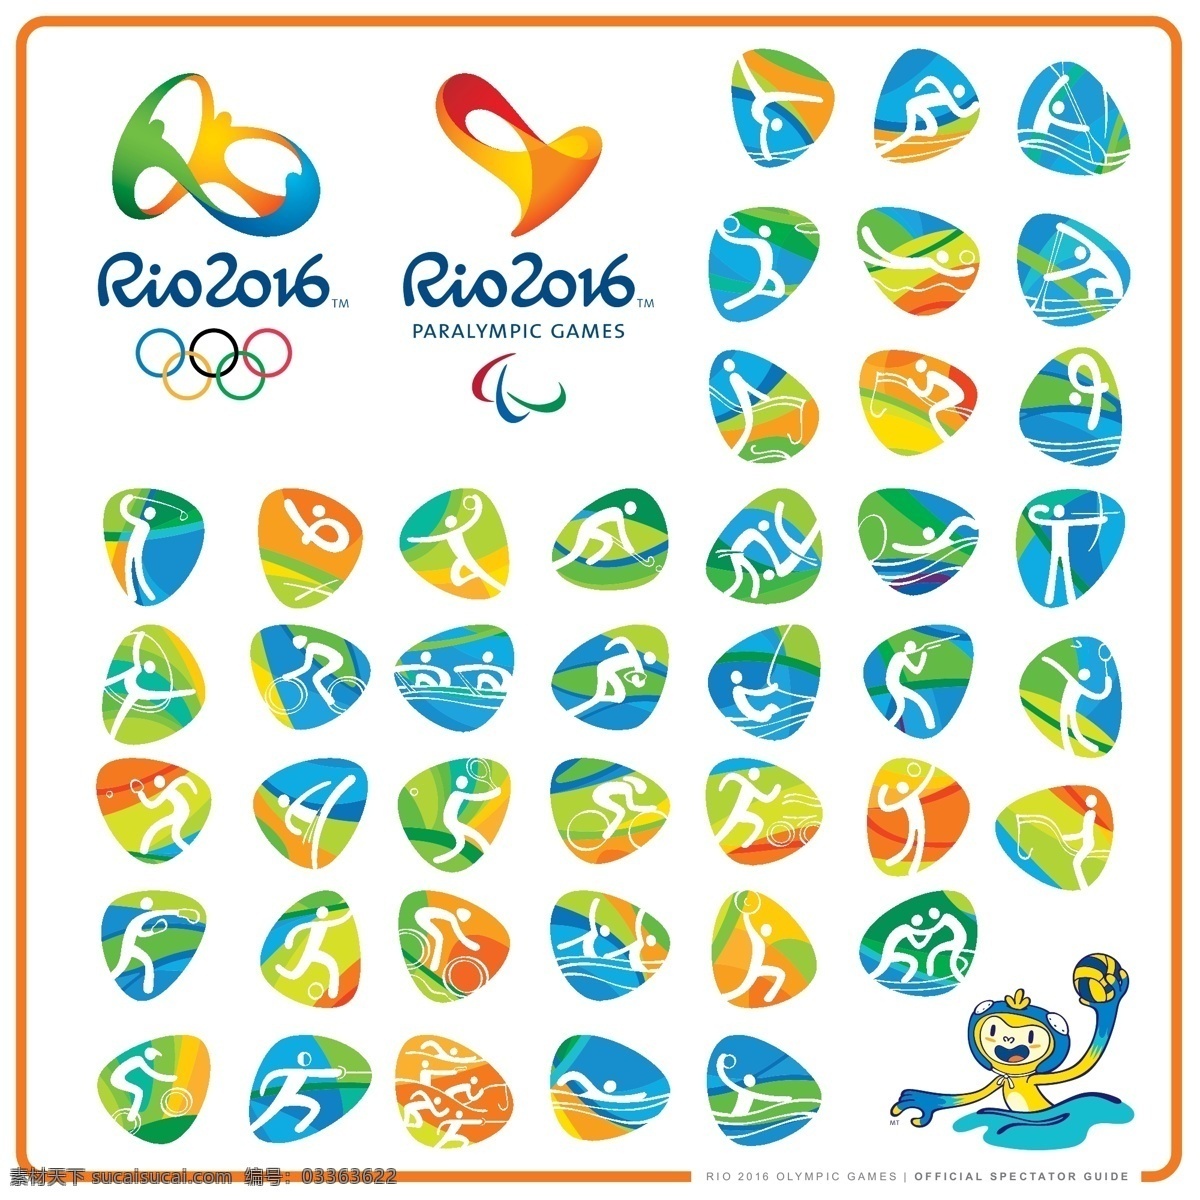 rio2016 里约 巴西 奥运会 rio 2016 标志 标识 图标 视觉规范 运动 项目 里约热内卢 标志图标 公共标识标志 白色